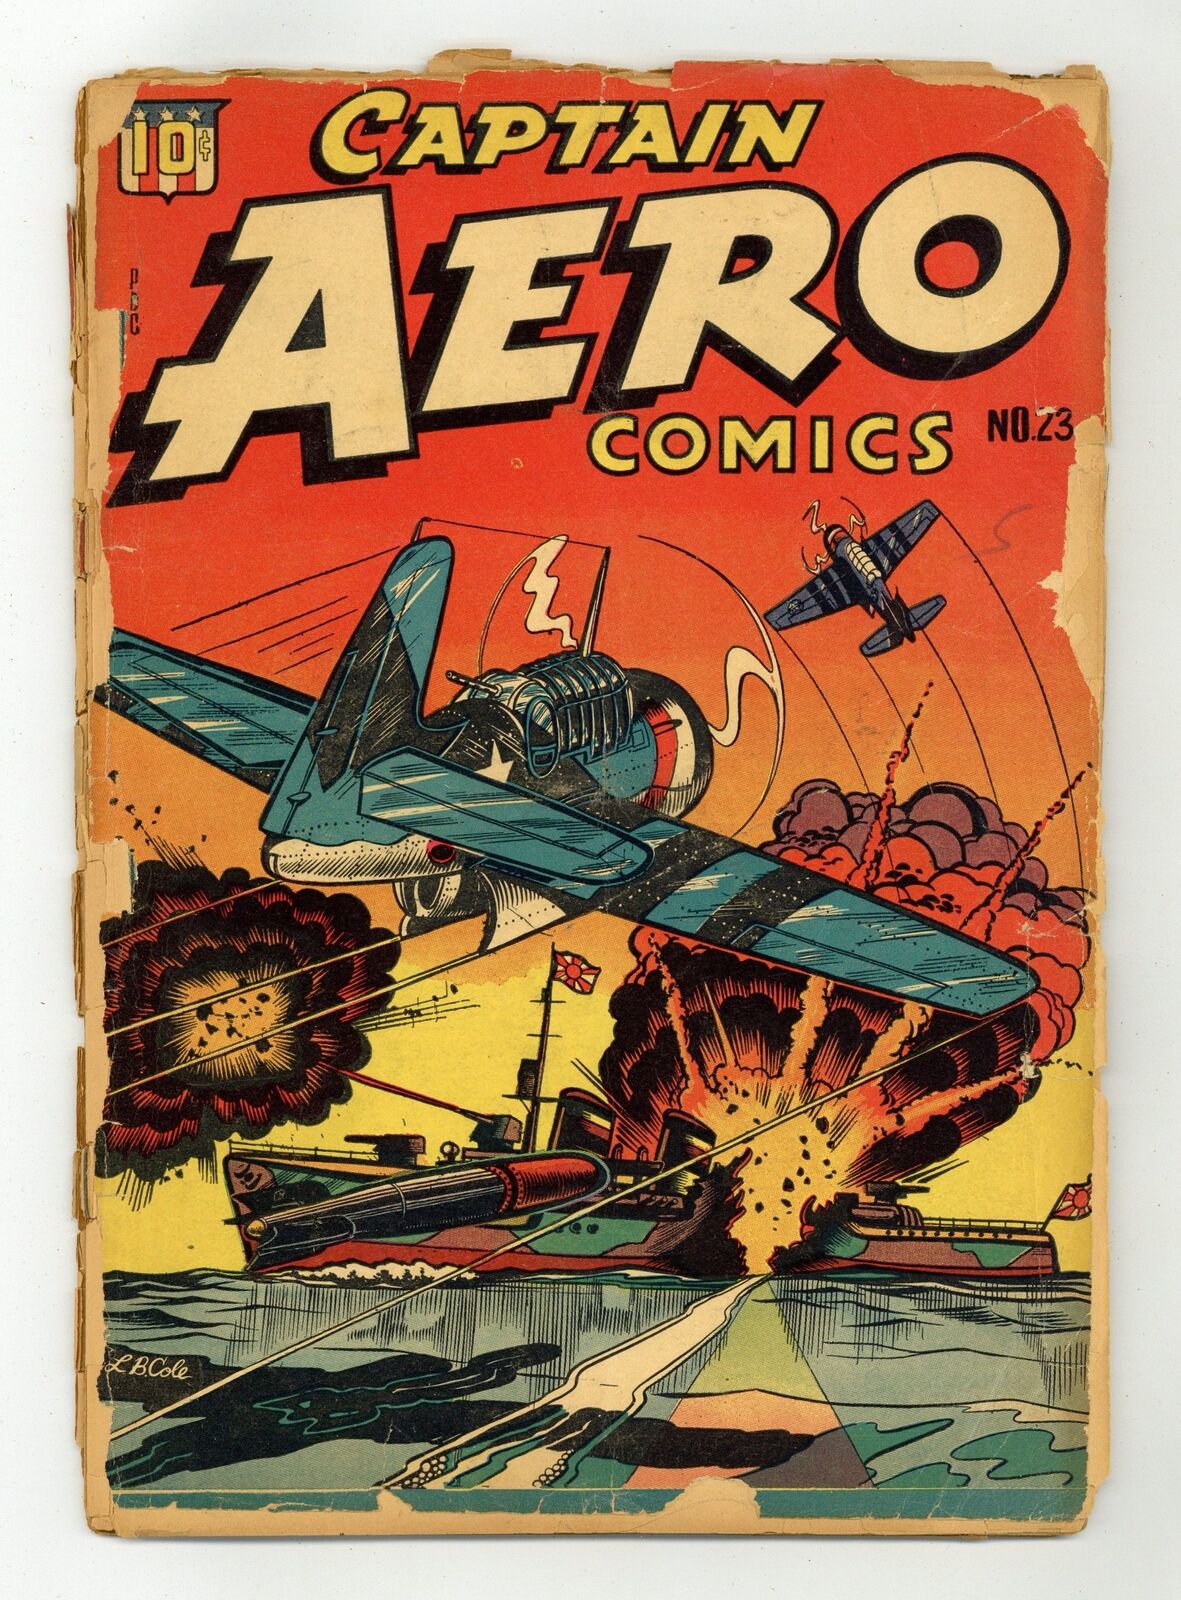 Captain Aero Comics Vol. 4 #23 PR 0.5 1945